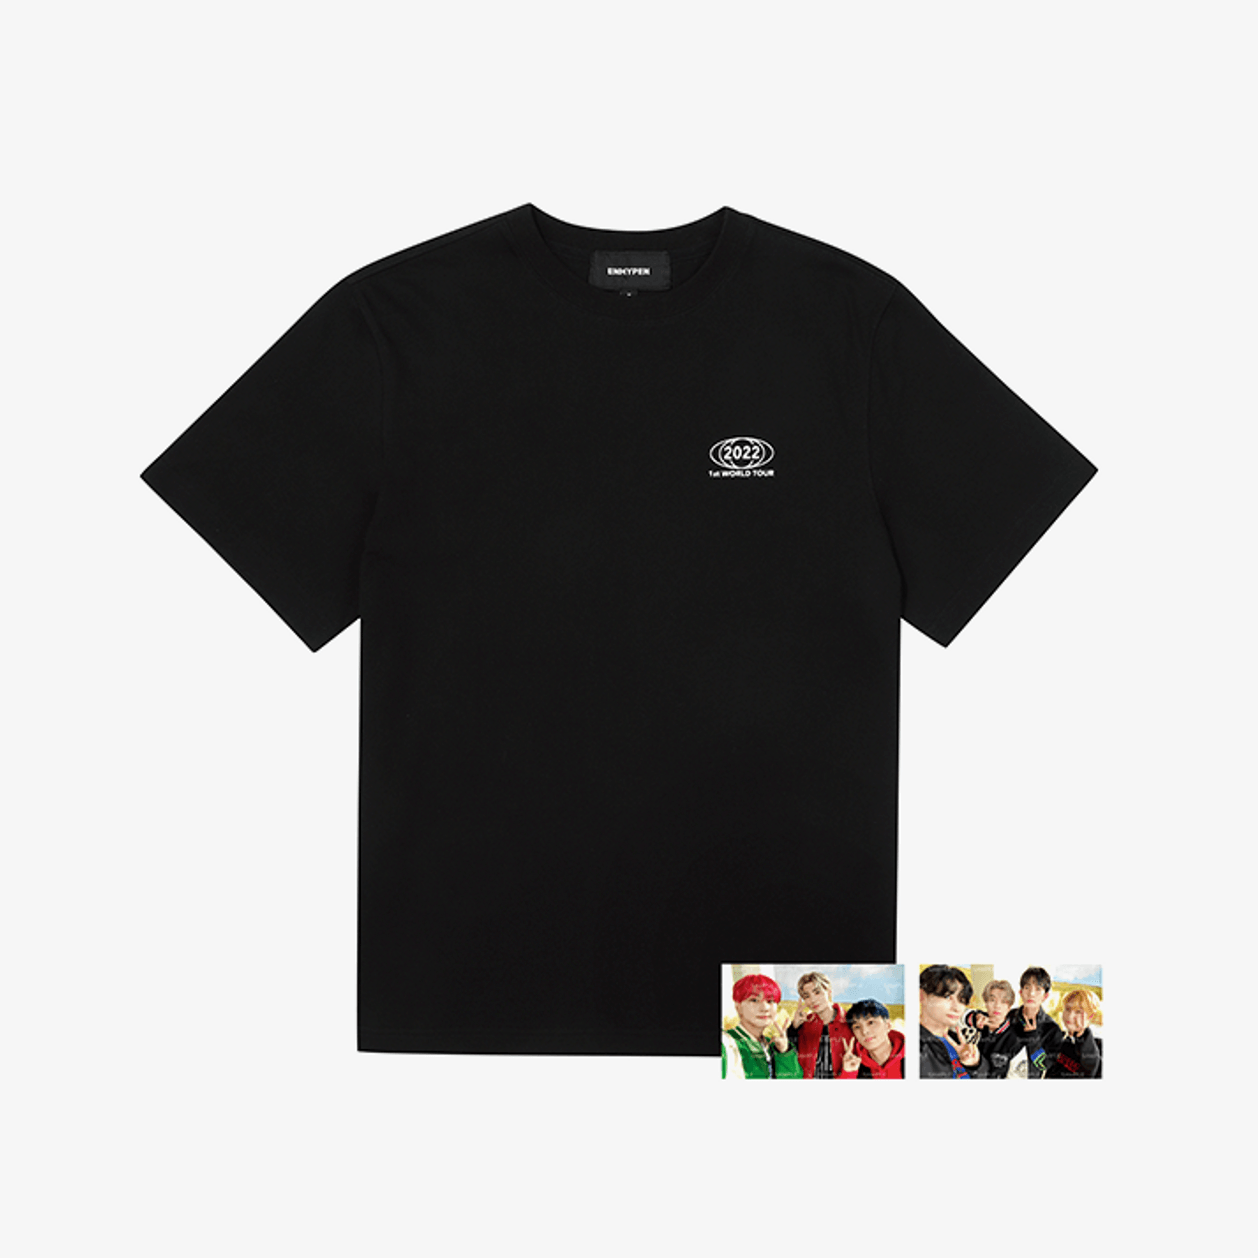 ENHYPEN World Tour MANIFESTO S/S T-Shirt